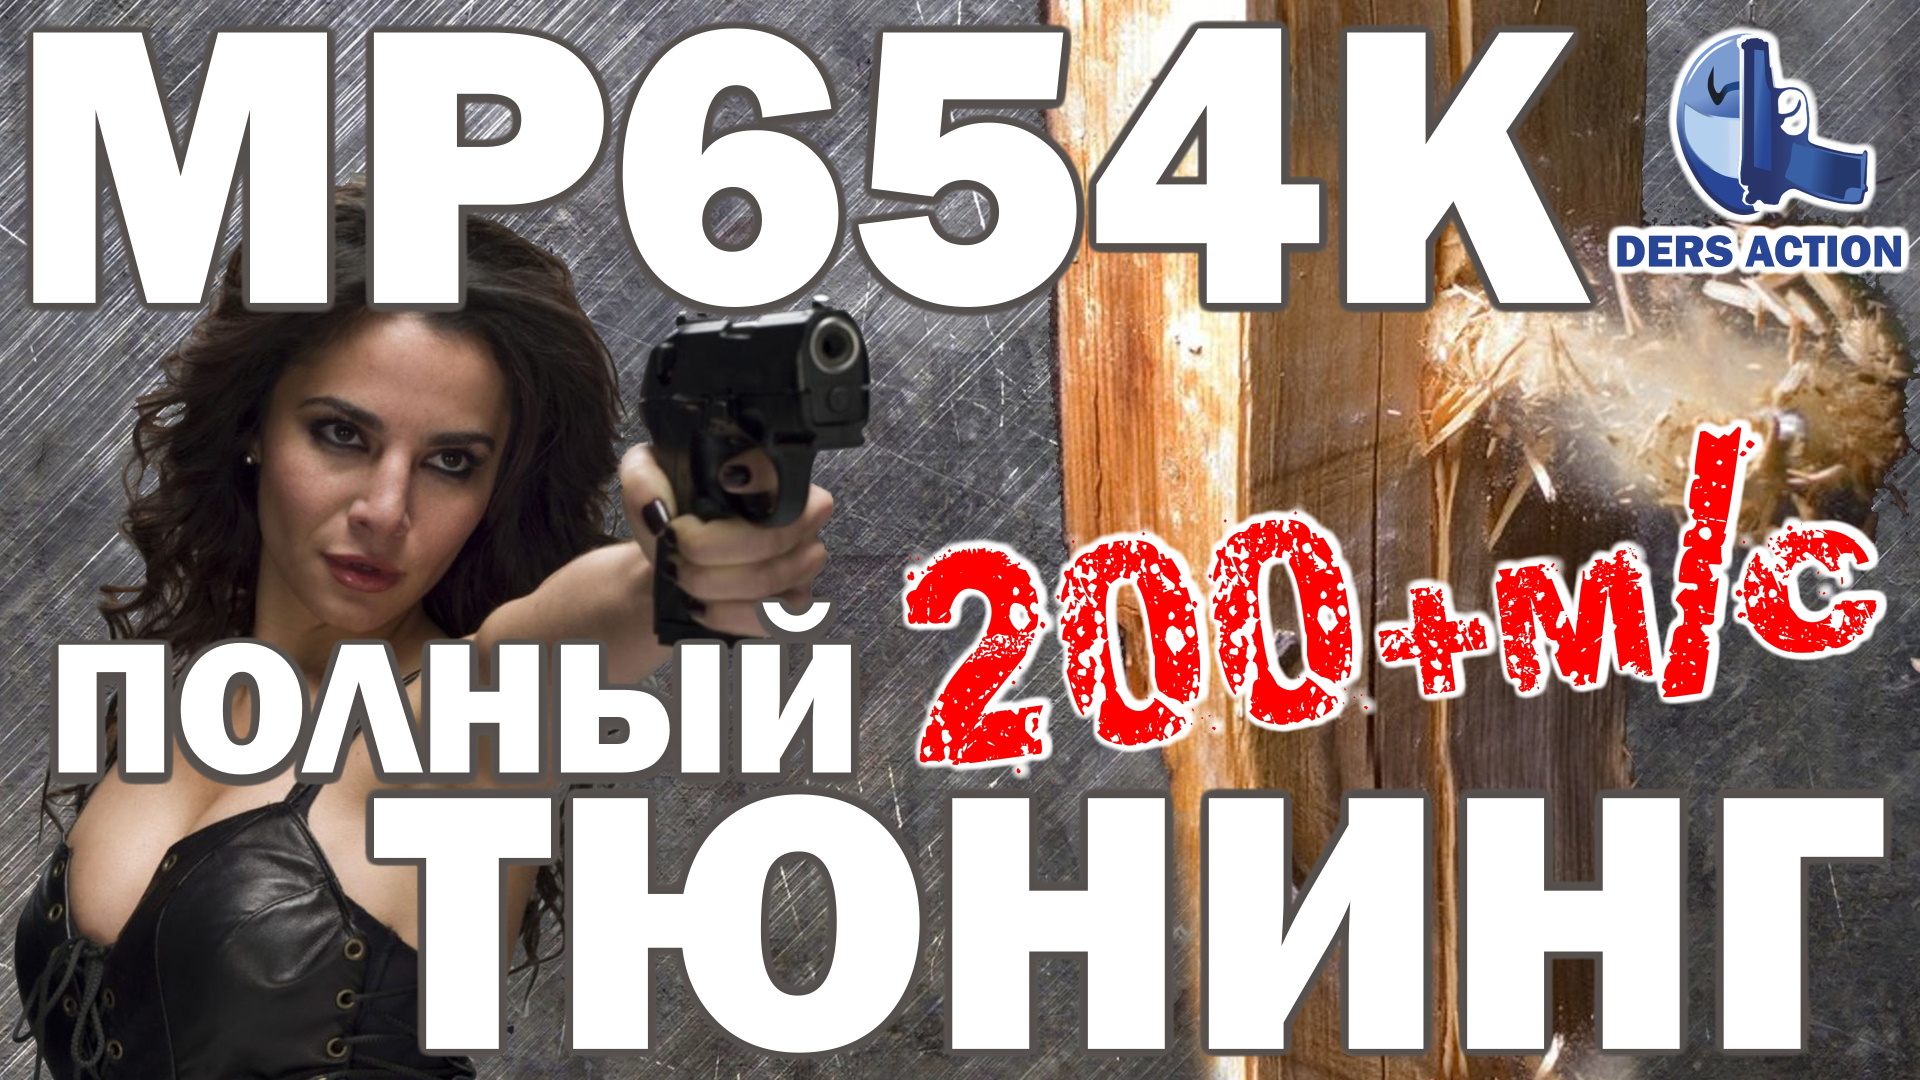 Макаров без лицензии! MP654K #макаров #мр654 #макарыч #пистолет #пм